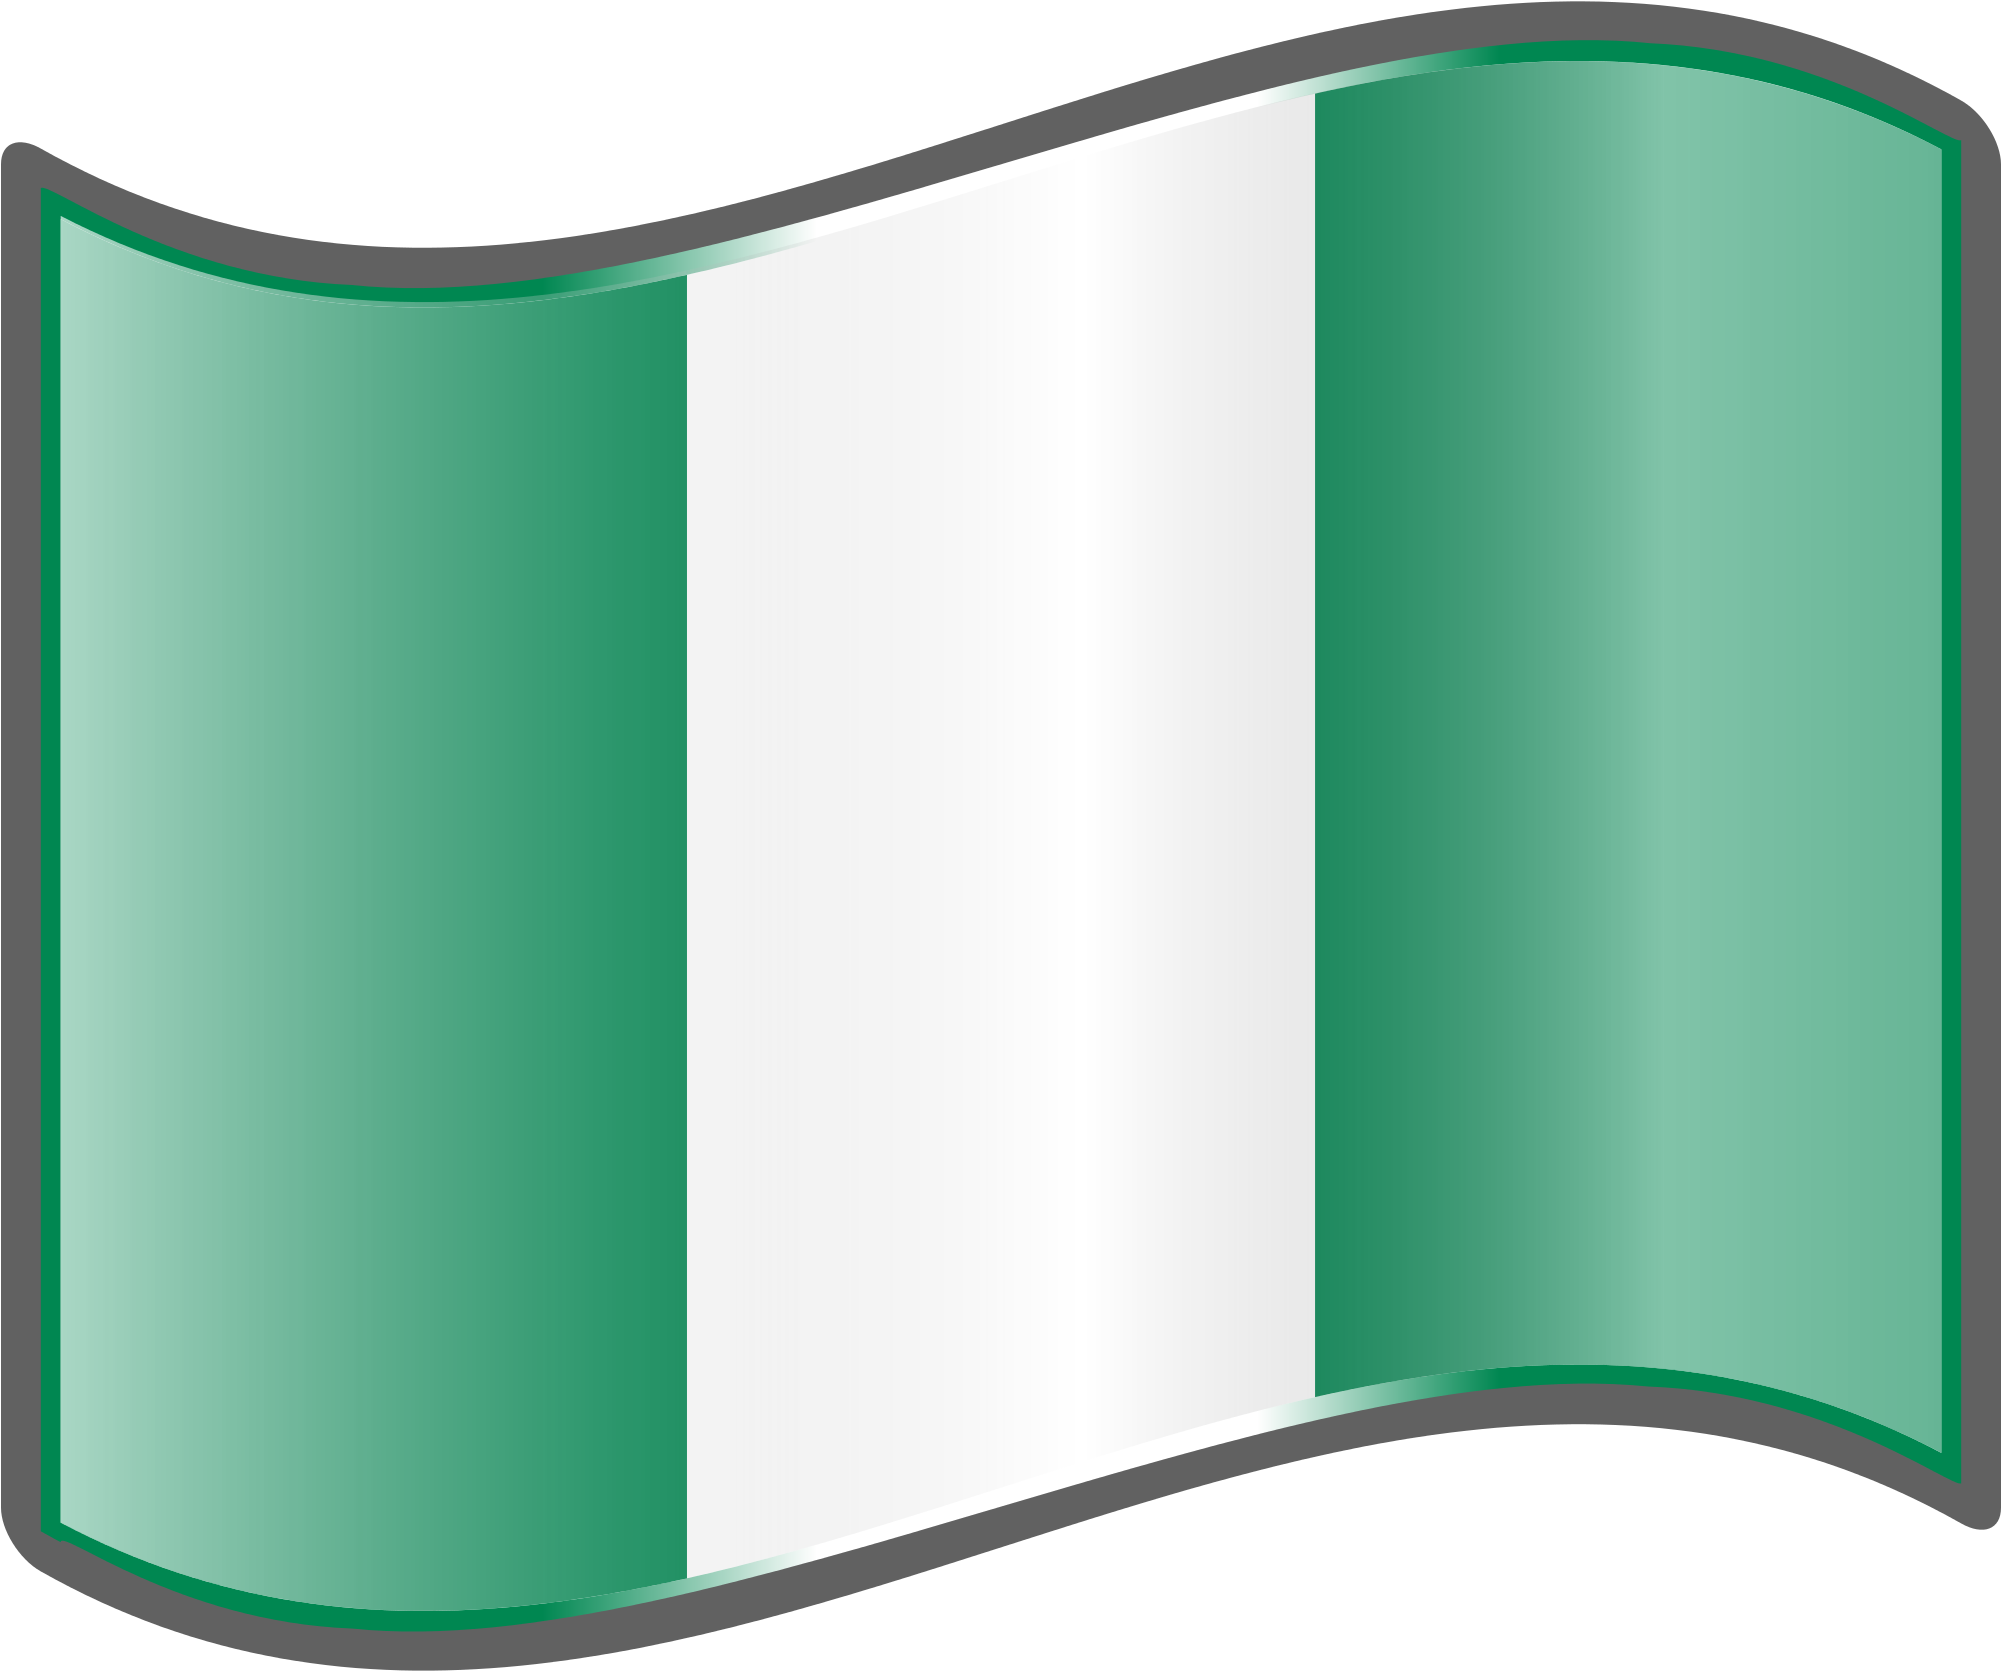 Nigeria Flag Transparent Images